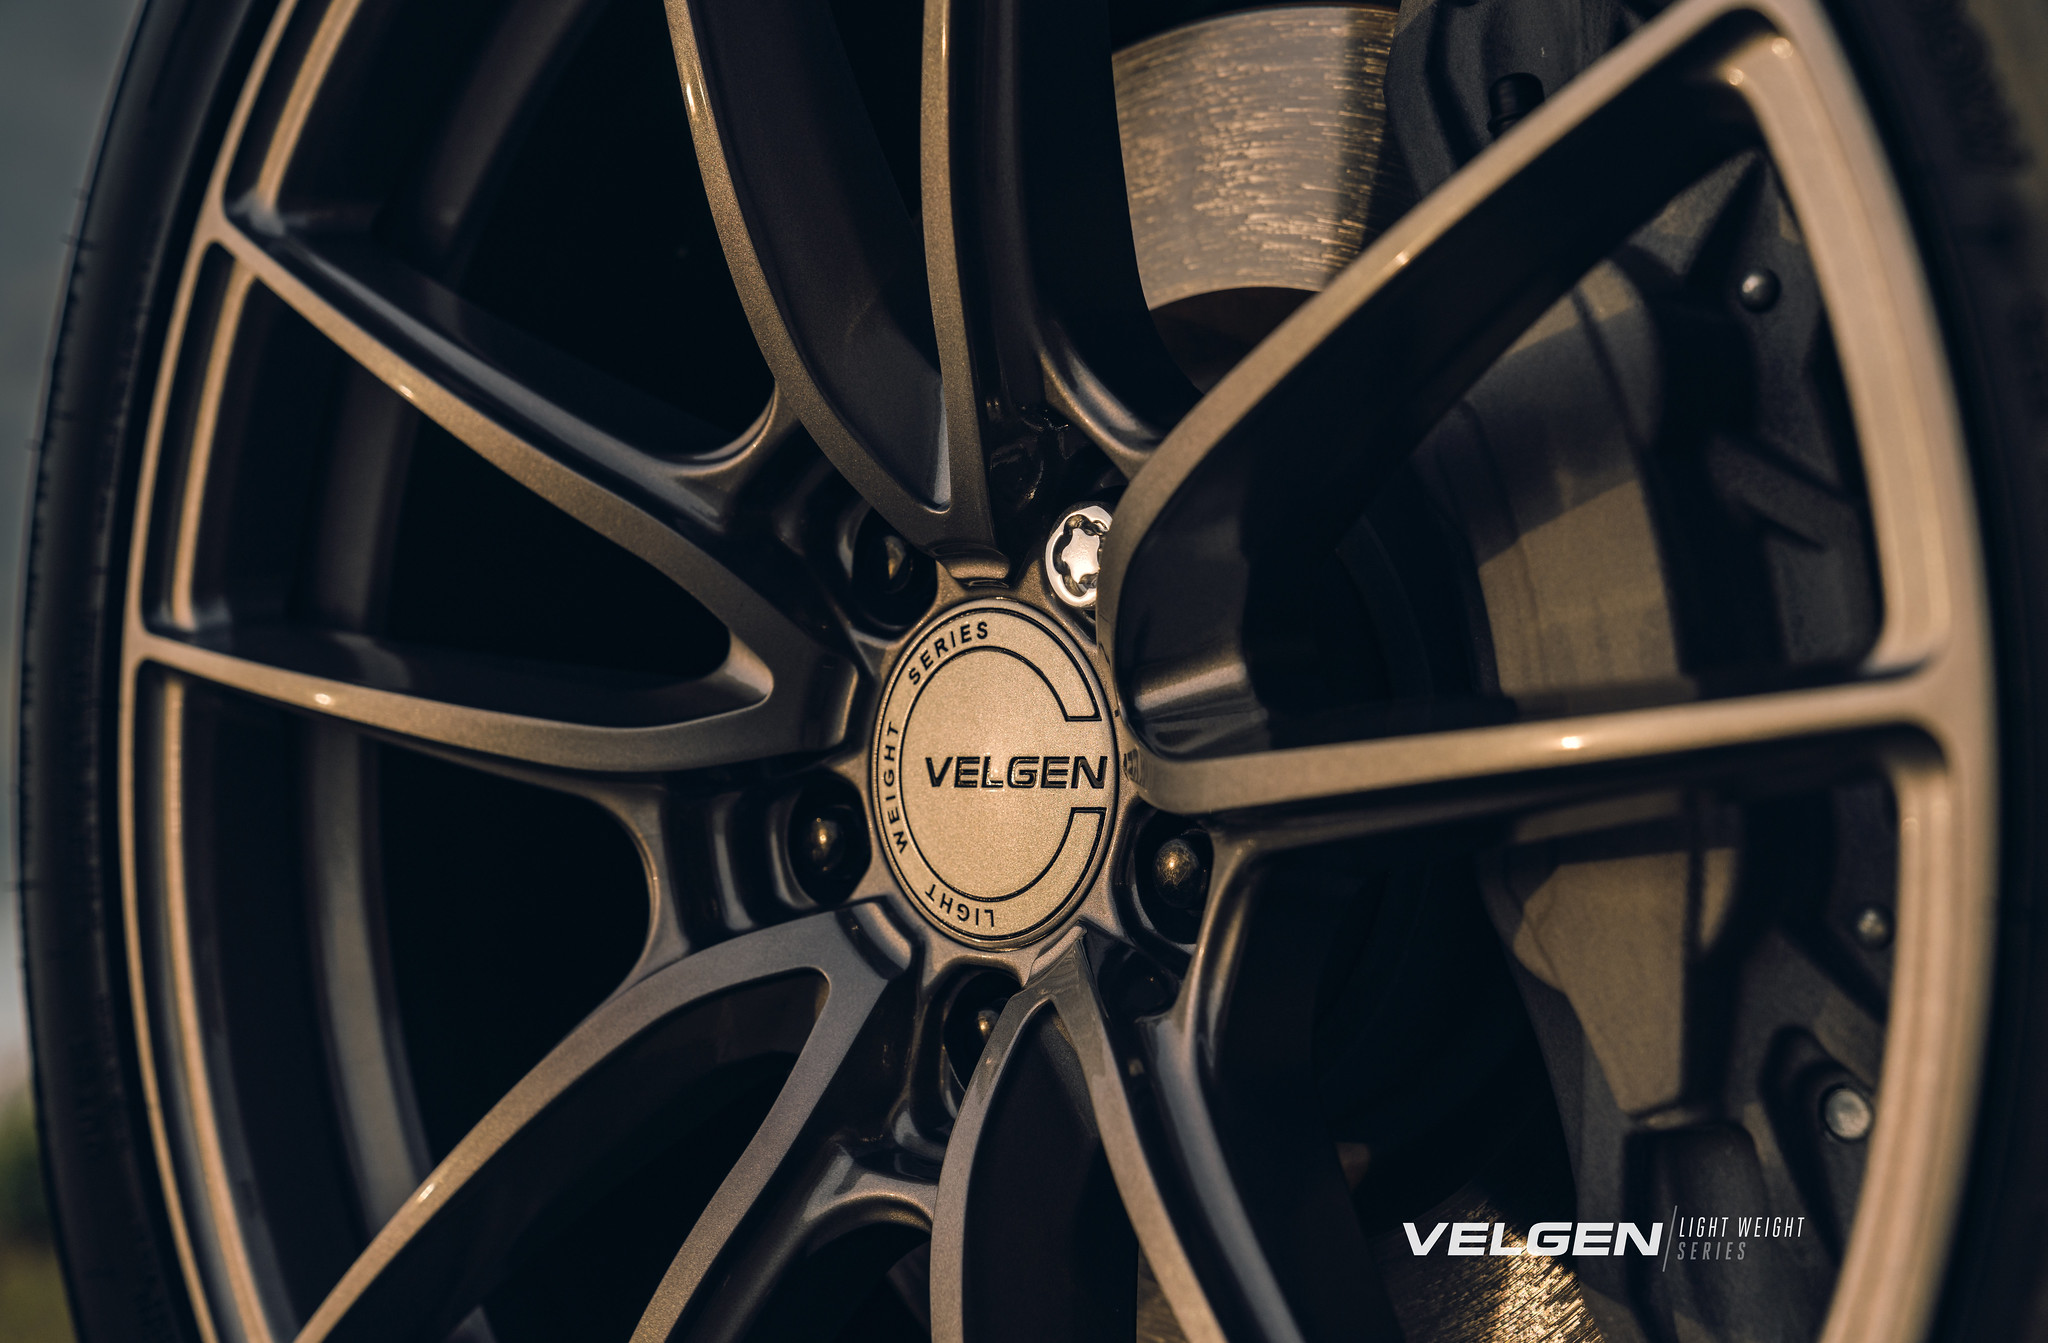 S650 Mustang Velgen wheels for your S650 Mustang | Vibe Motorsports 52575265432_bb0fe718bf_k